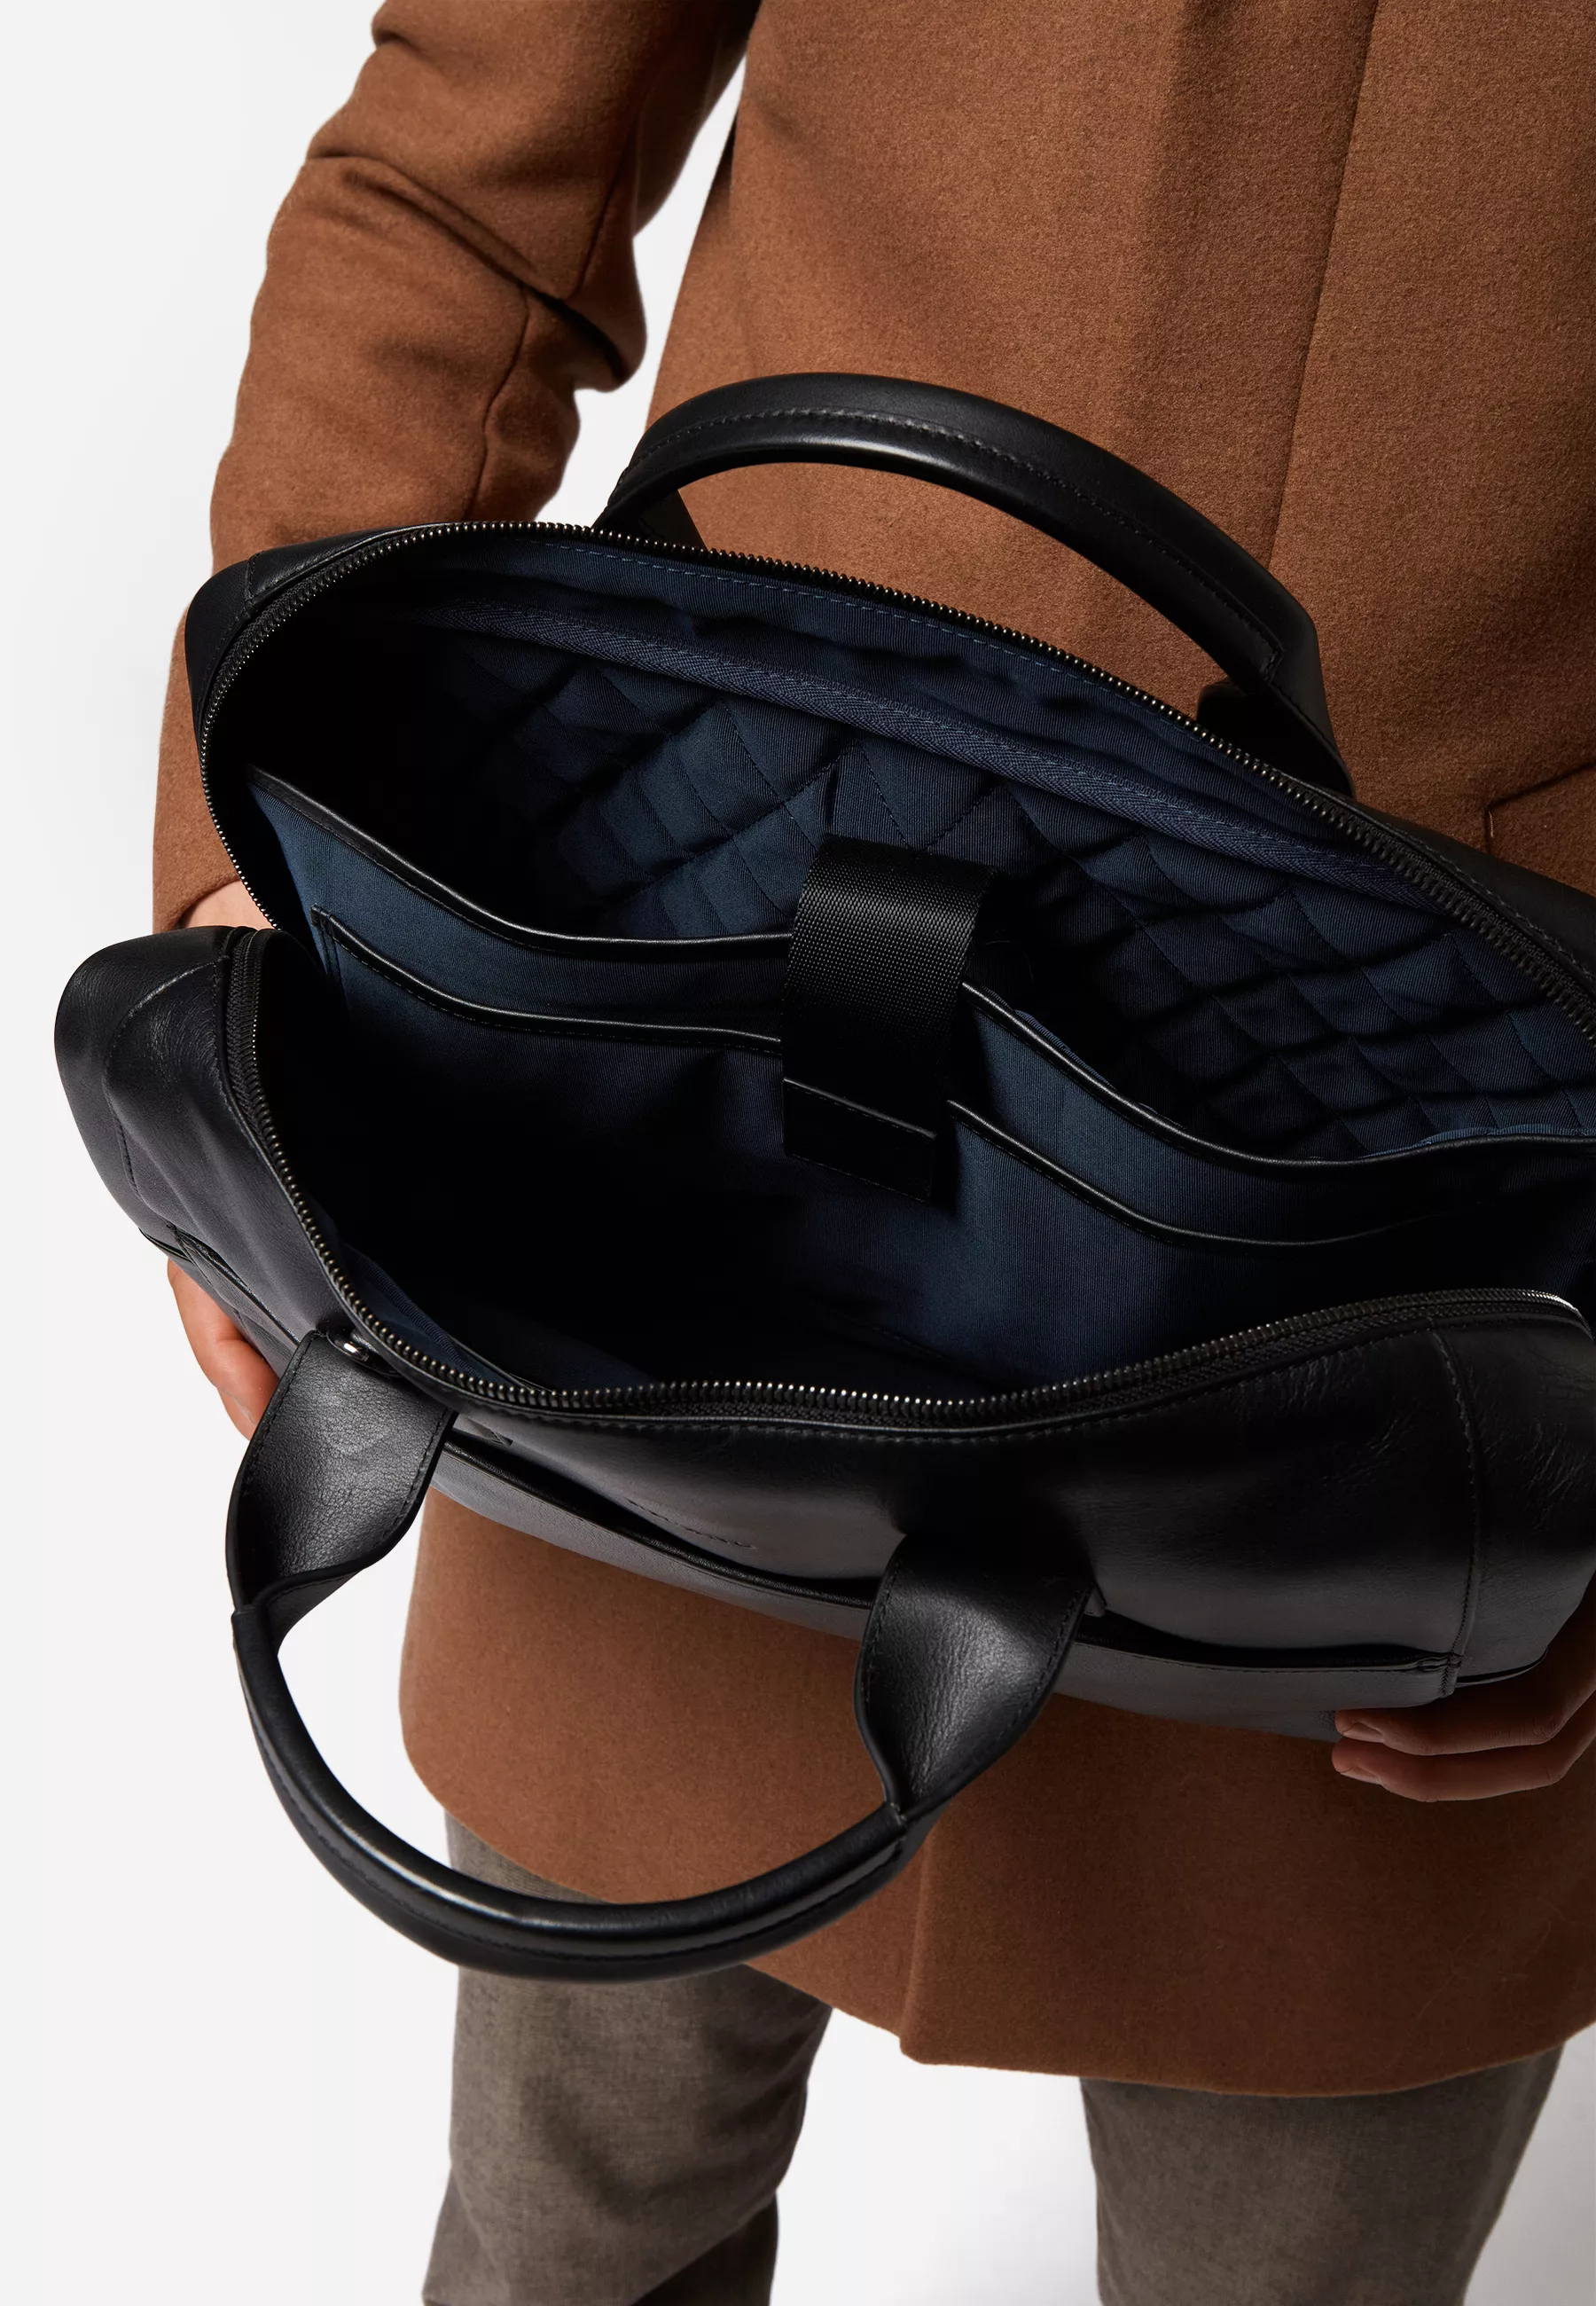 Herren Ledertasche Laptoptasche Noah in schwarz von RICANO, Detailansicht am Model